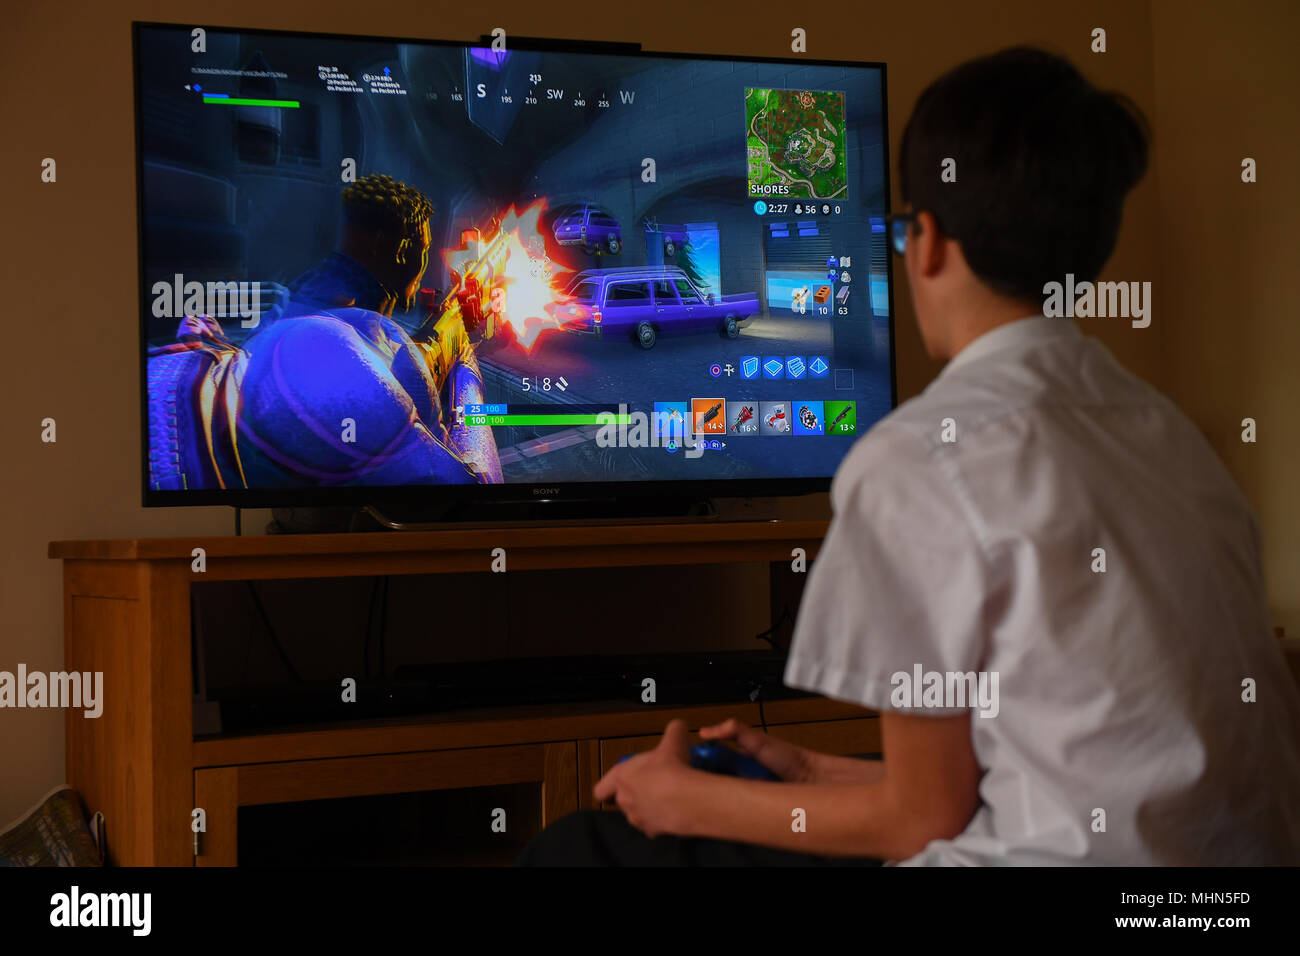 Ein teenager Boy spielt die Hit computer spiel Fortnite auf einem großen TV  auf einer Playstation 4-Konsole Stockfotografie - Alamy